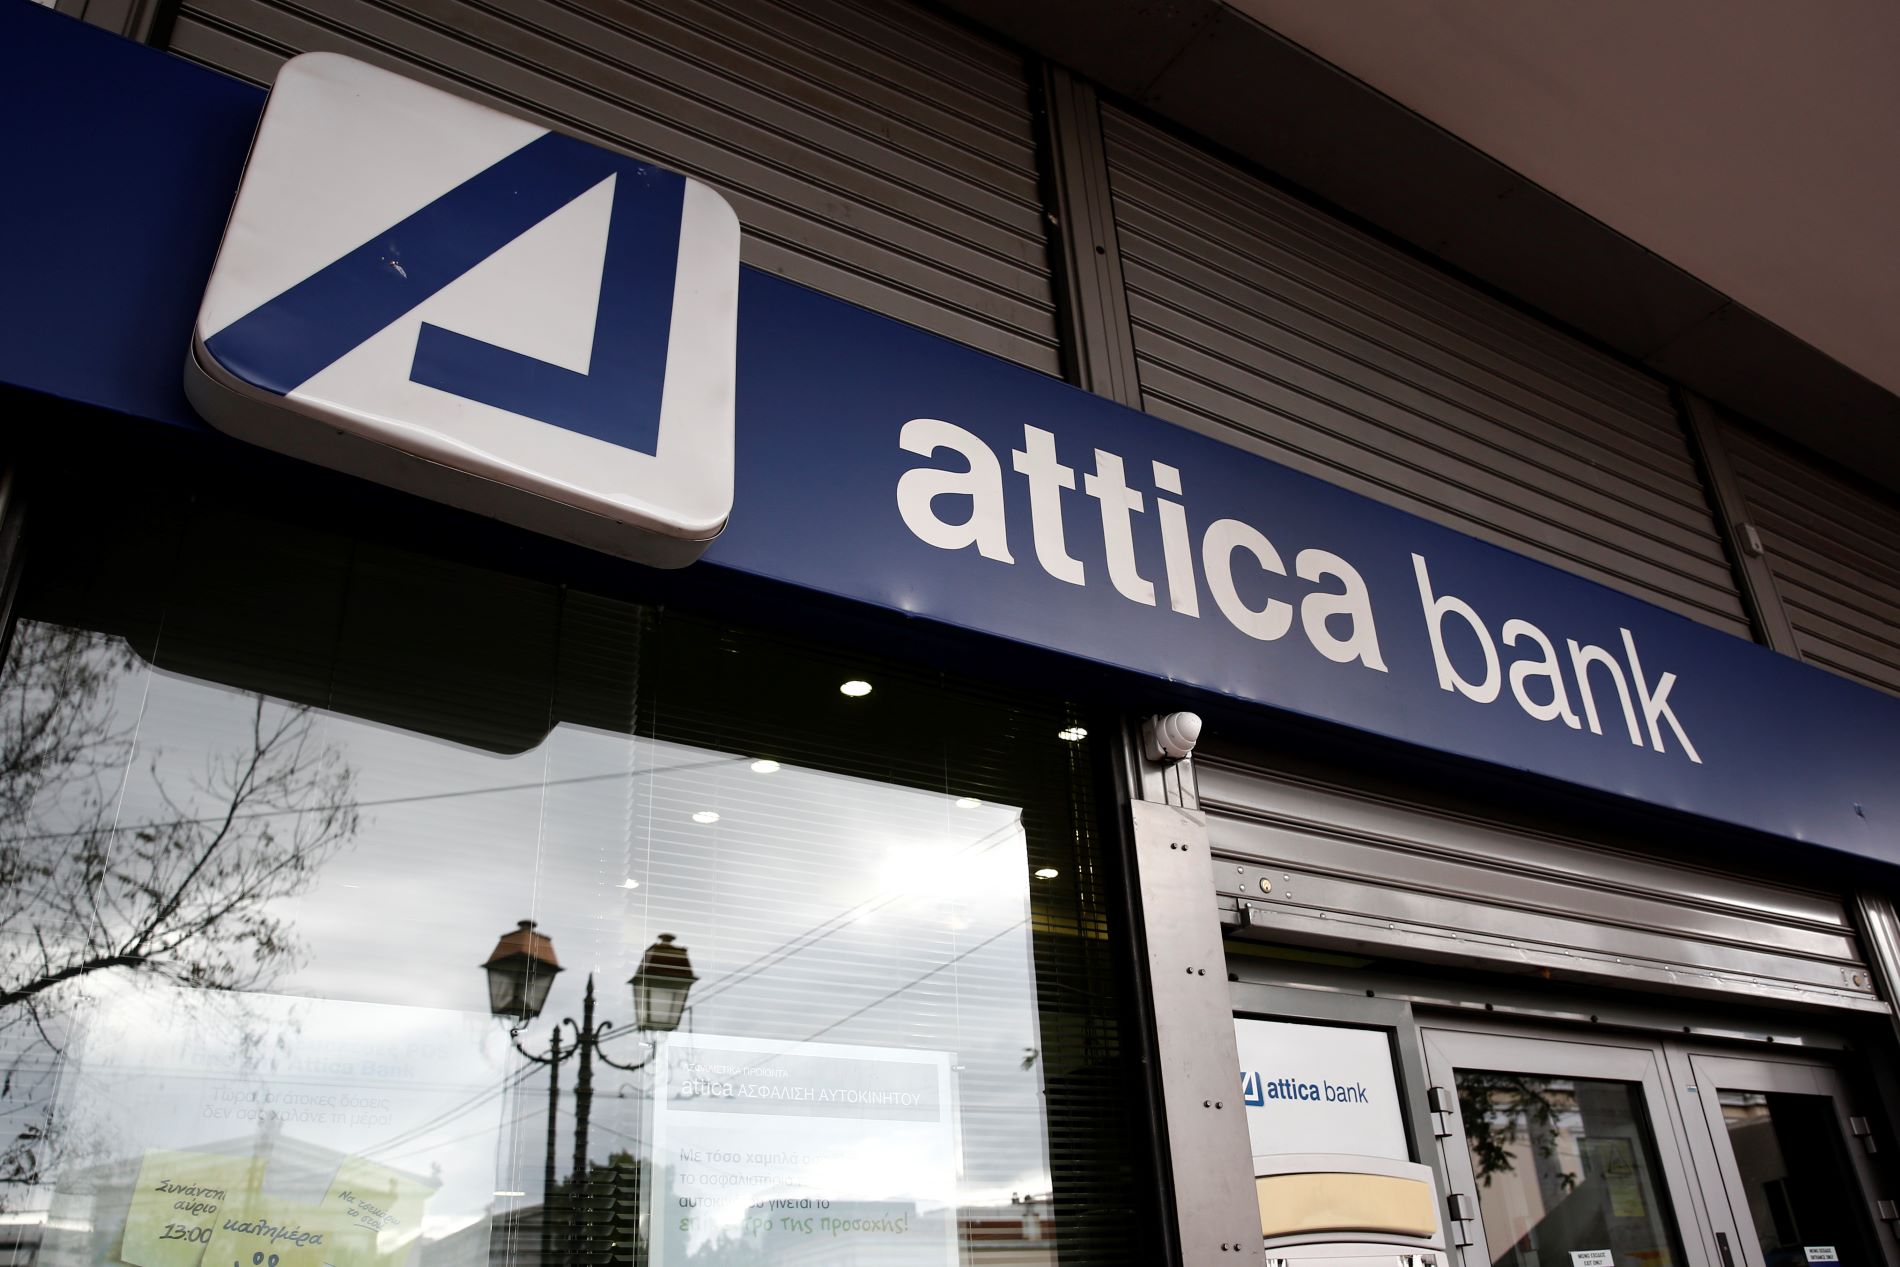 Attica Bank: Η συμφωνία με τον στρατηγικό επενδυτή χτίζει τον 5ο πόλο στις τράπεζες